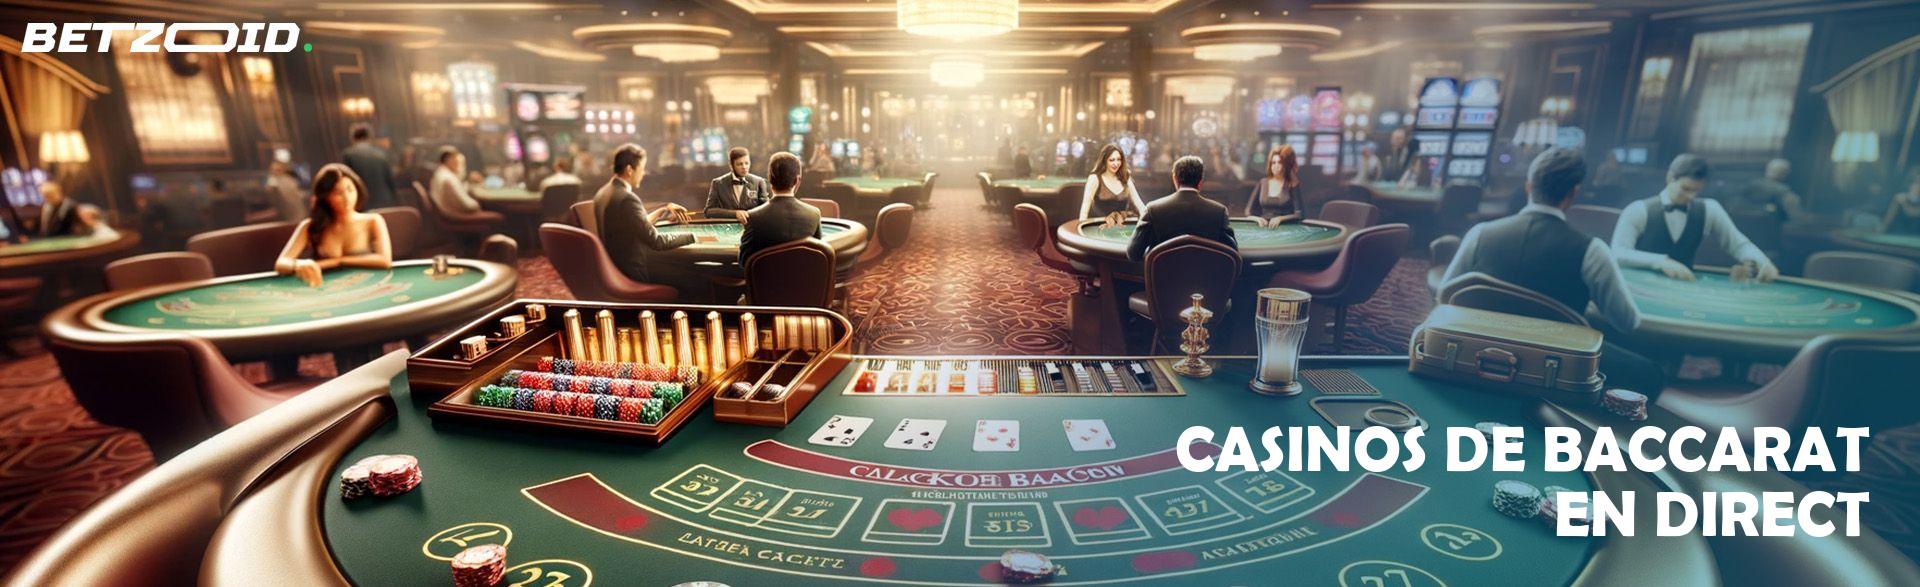 Casinos de Baccarat en Direct.